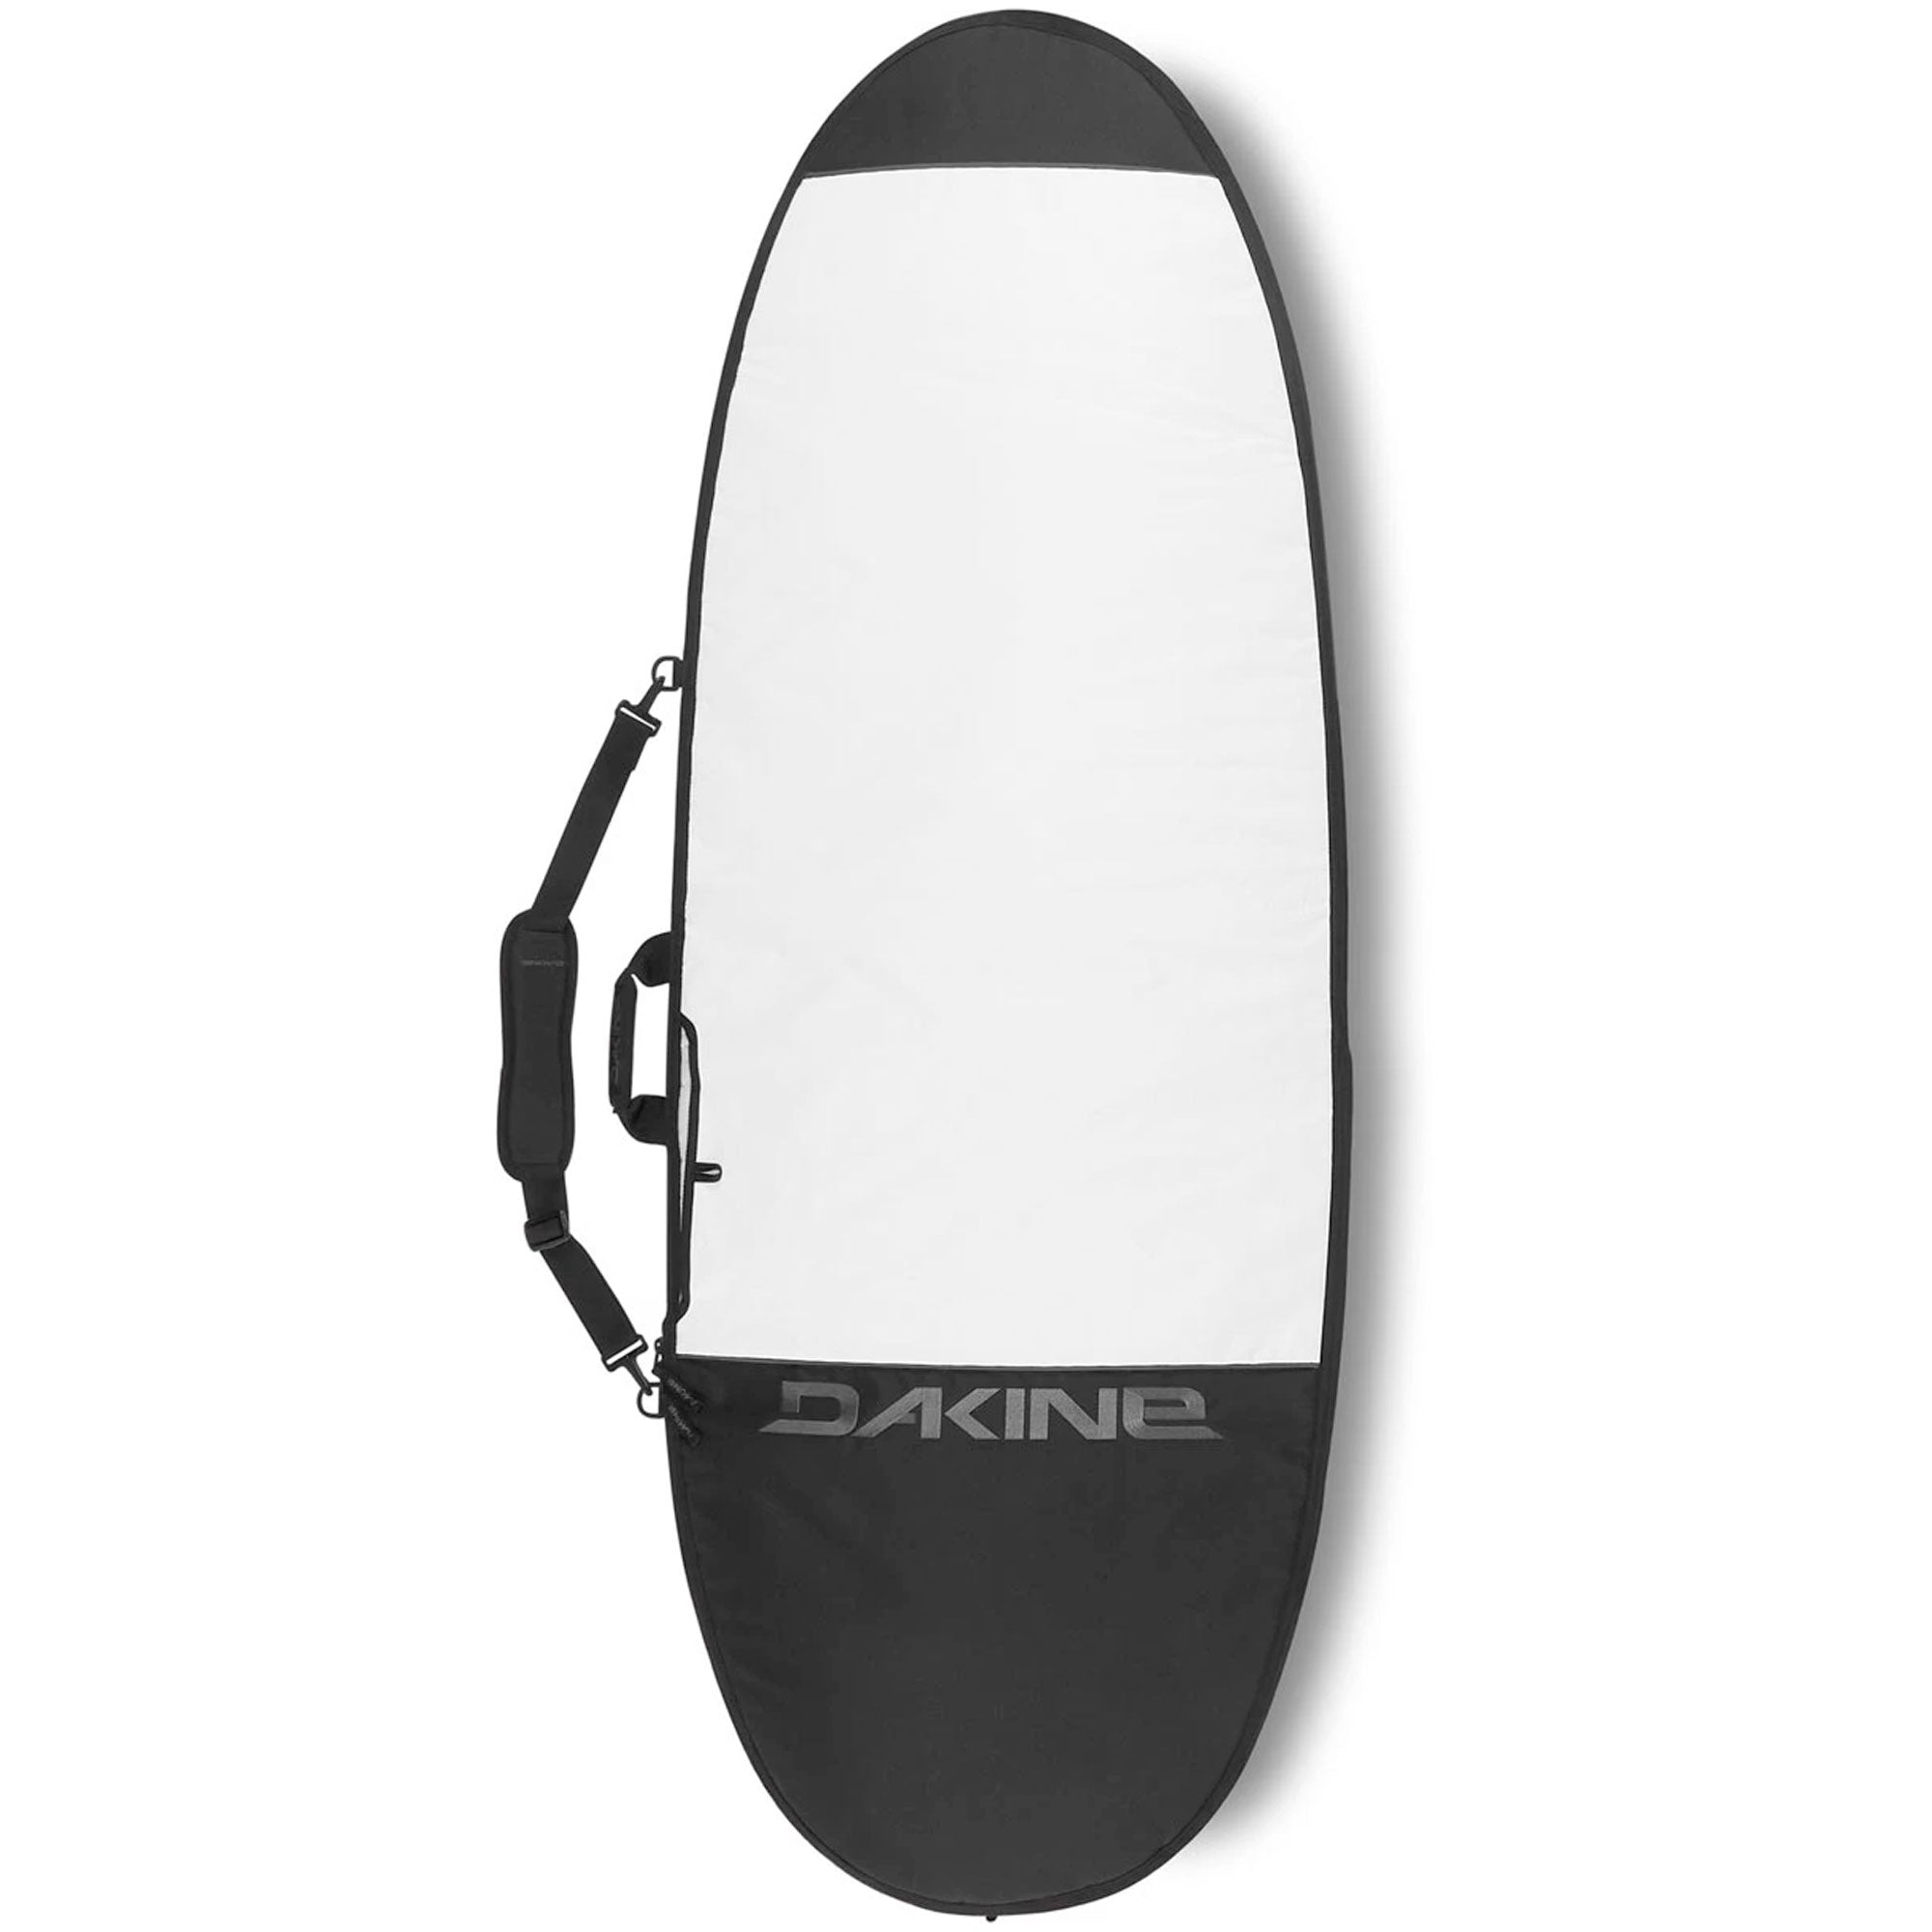 Dakine Surfboard Bags